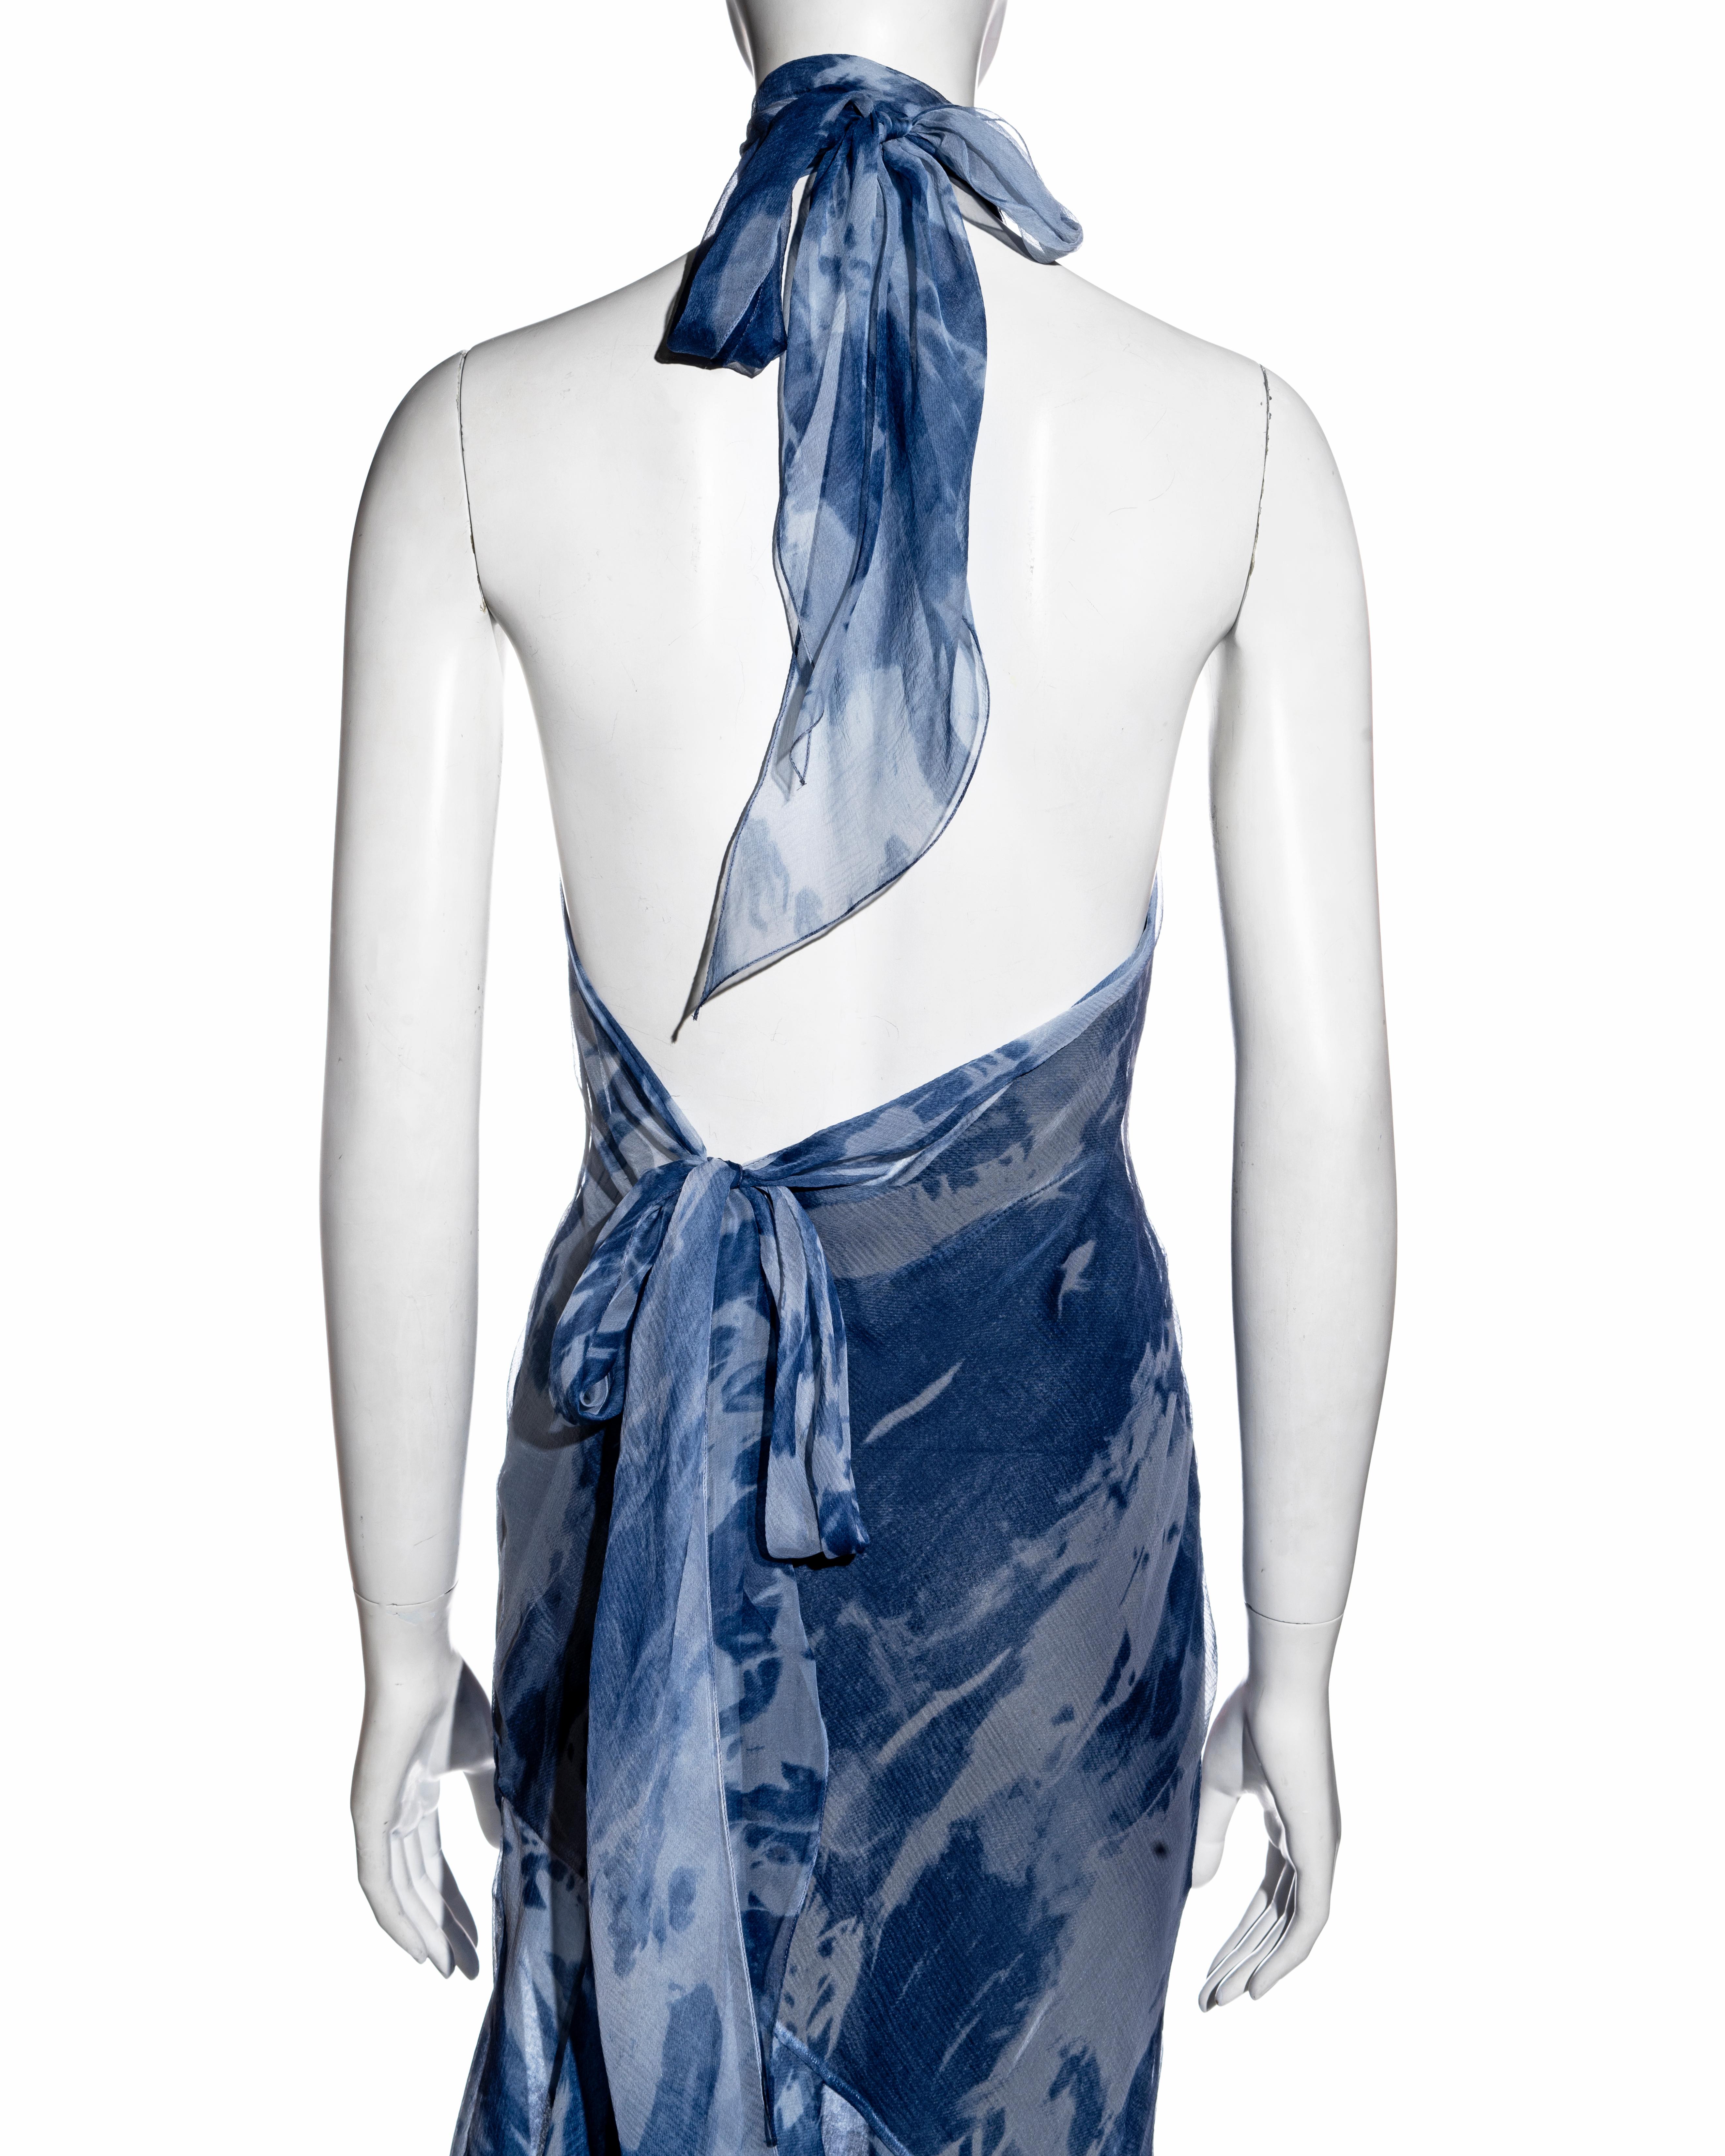 Christian Dior by John Galliano denim-printed silk bias-cut dress, fw 2000 2